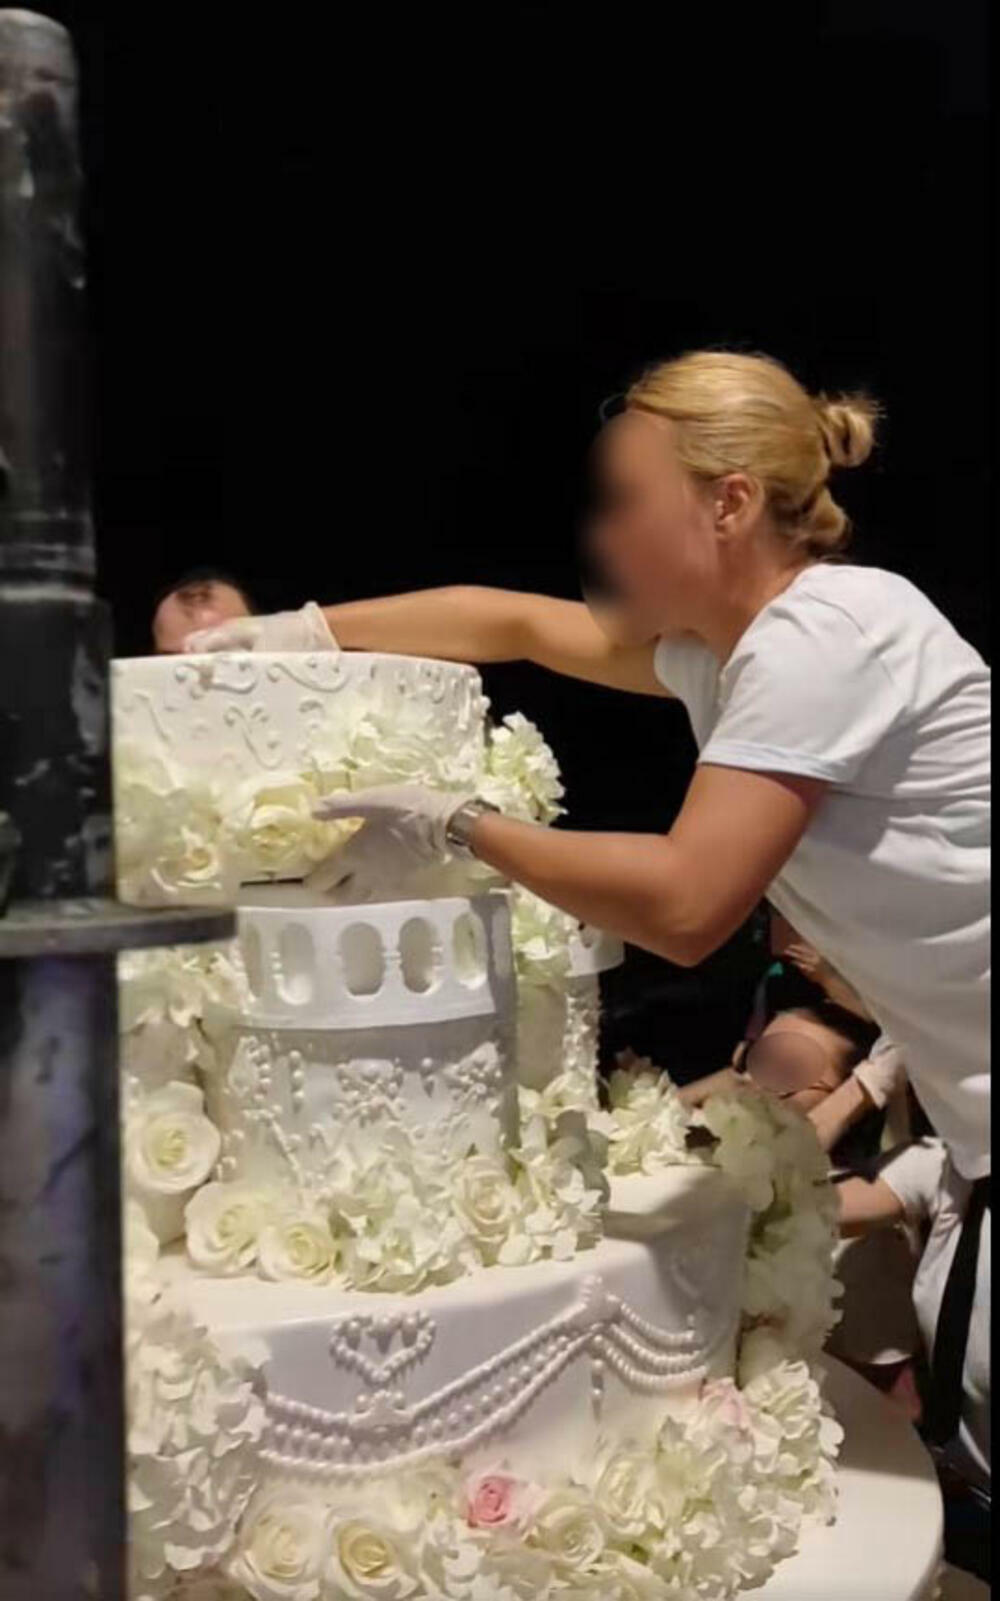 Najveće šok i iznenađenje je izazvala ogromna mladalačka torta, koja je više ličila na 'soliter'